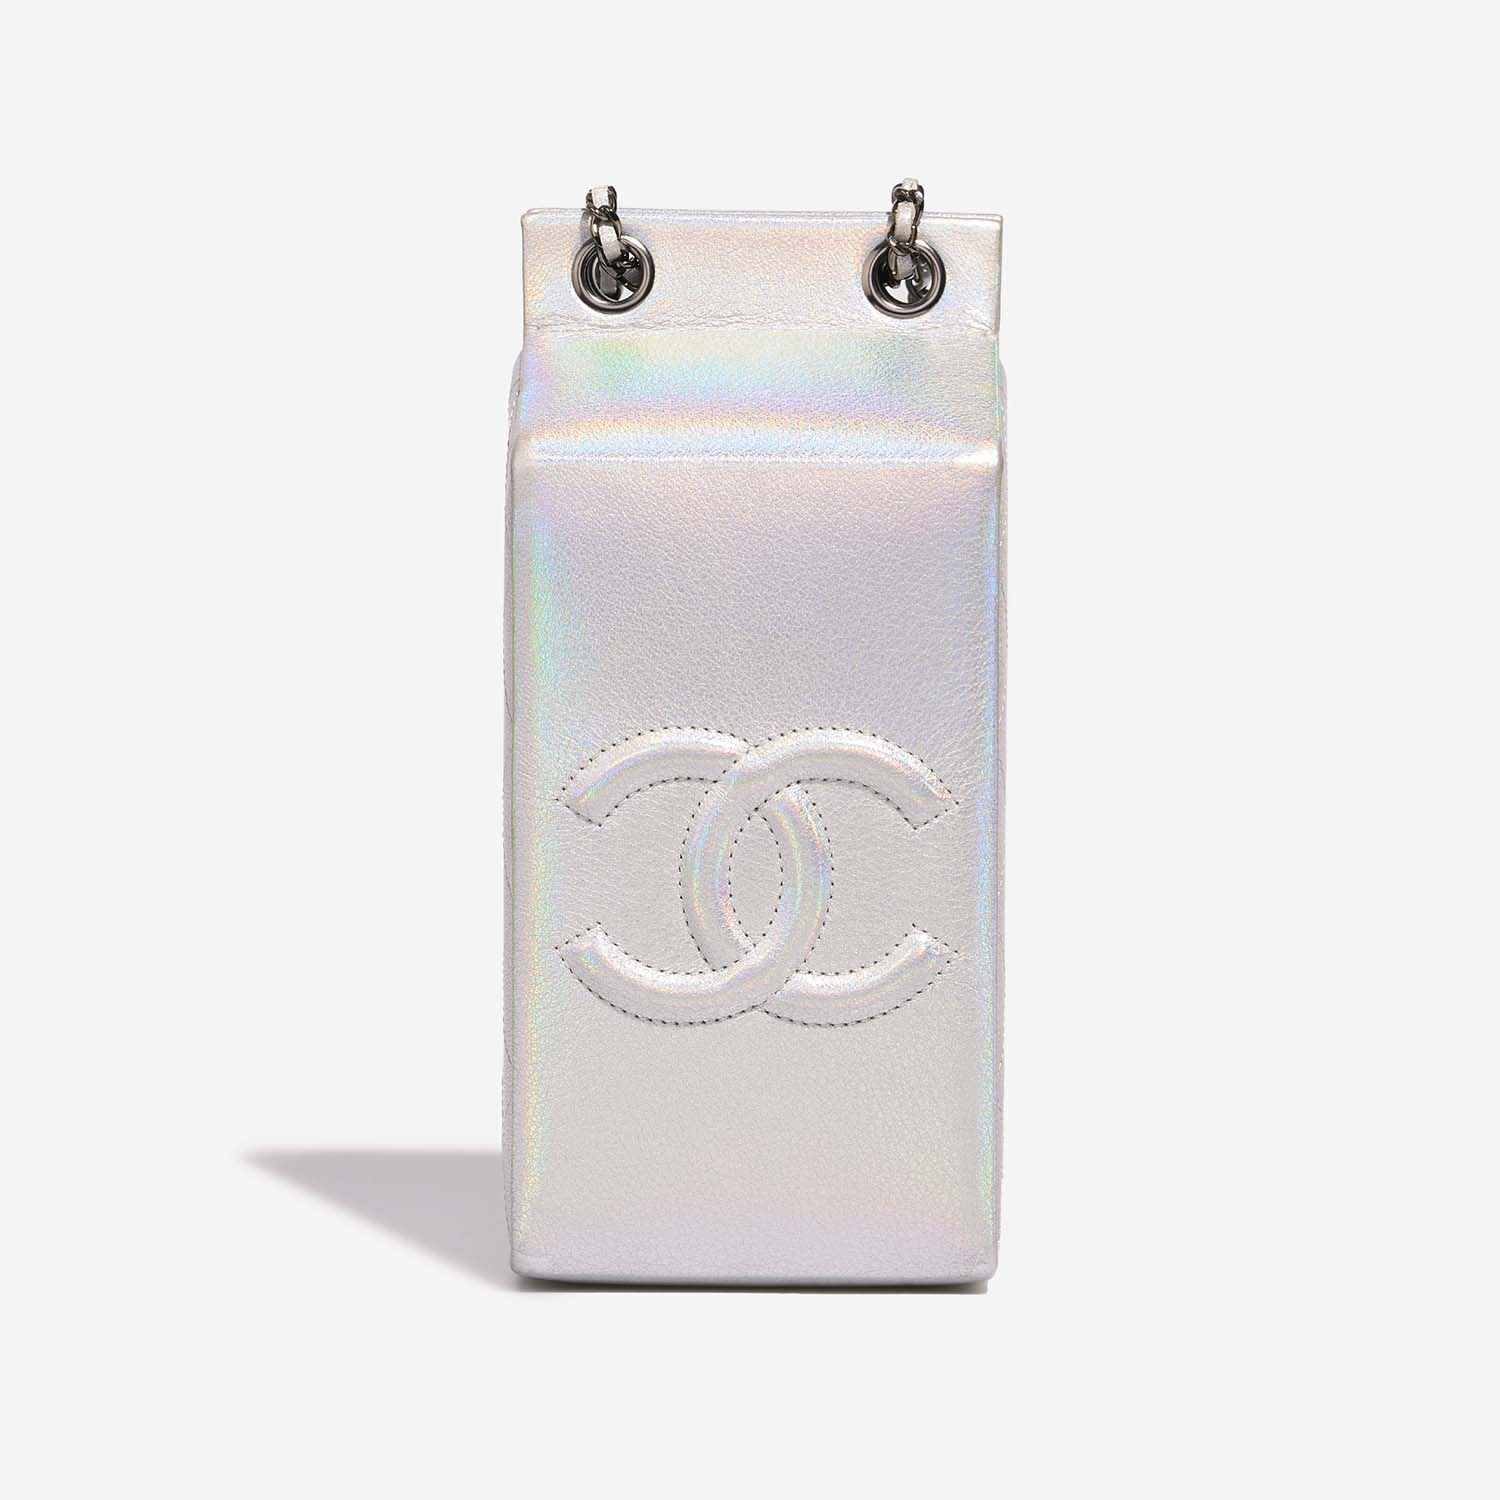 Chanel MilkCarton Silver Back | Verkaufen Sie Ihre Designer-Tasche auf Saclab.com